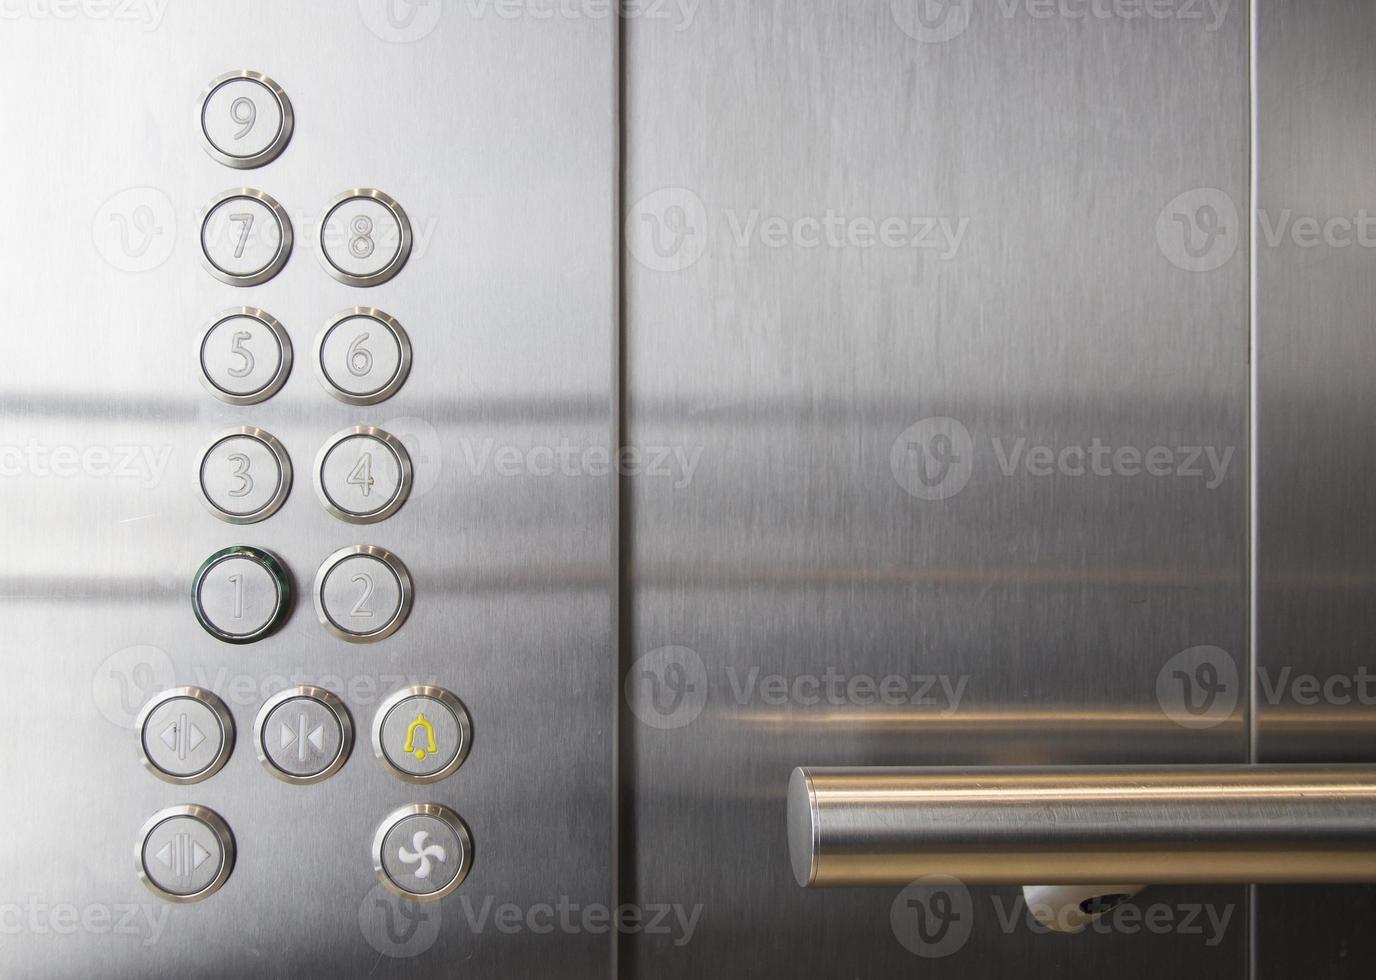 garde-corps et boutons de sol dans l'ascenseur du bureau moderne photo